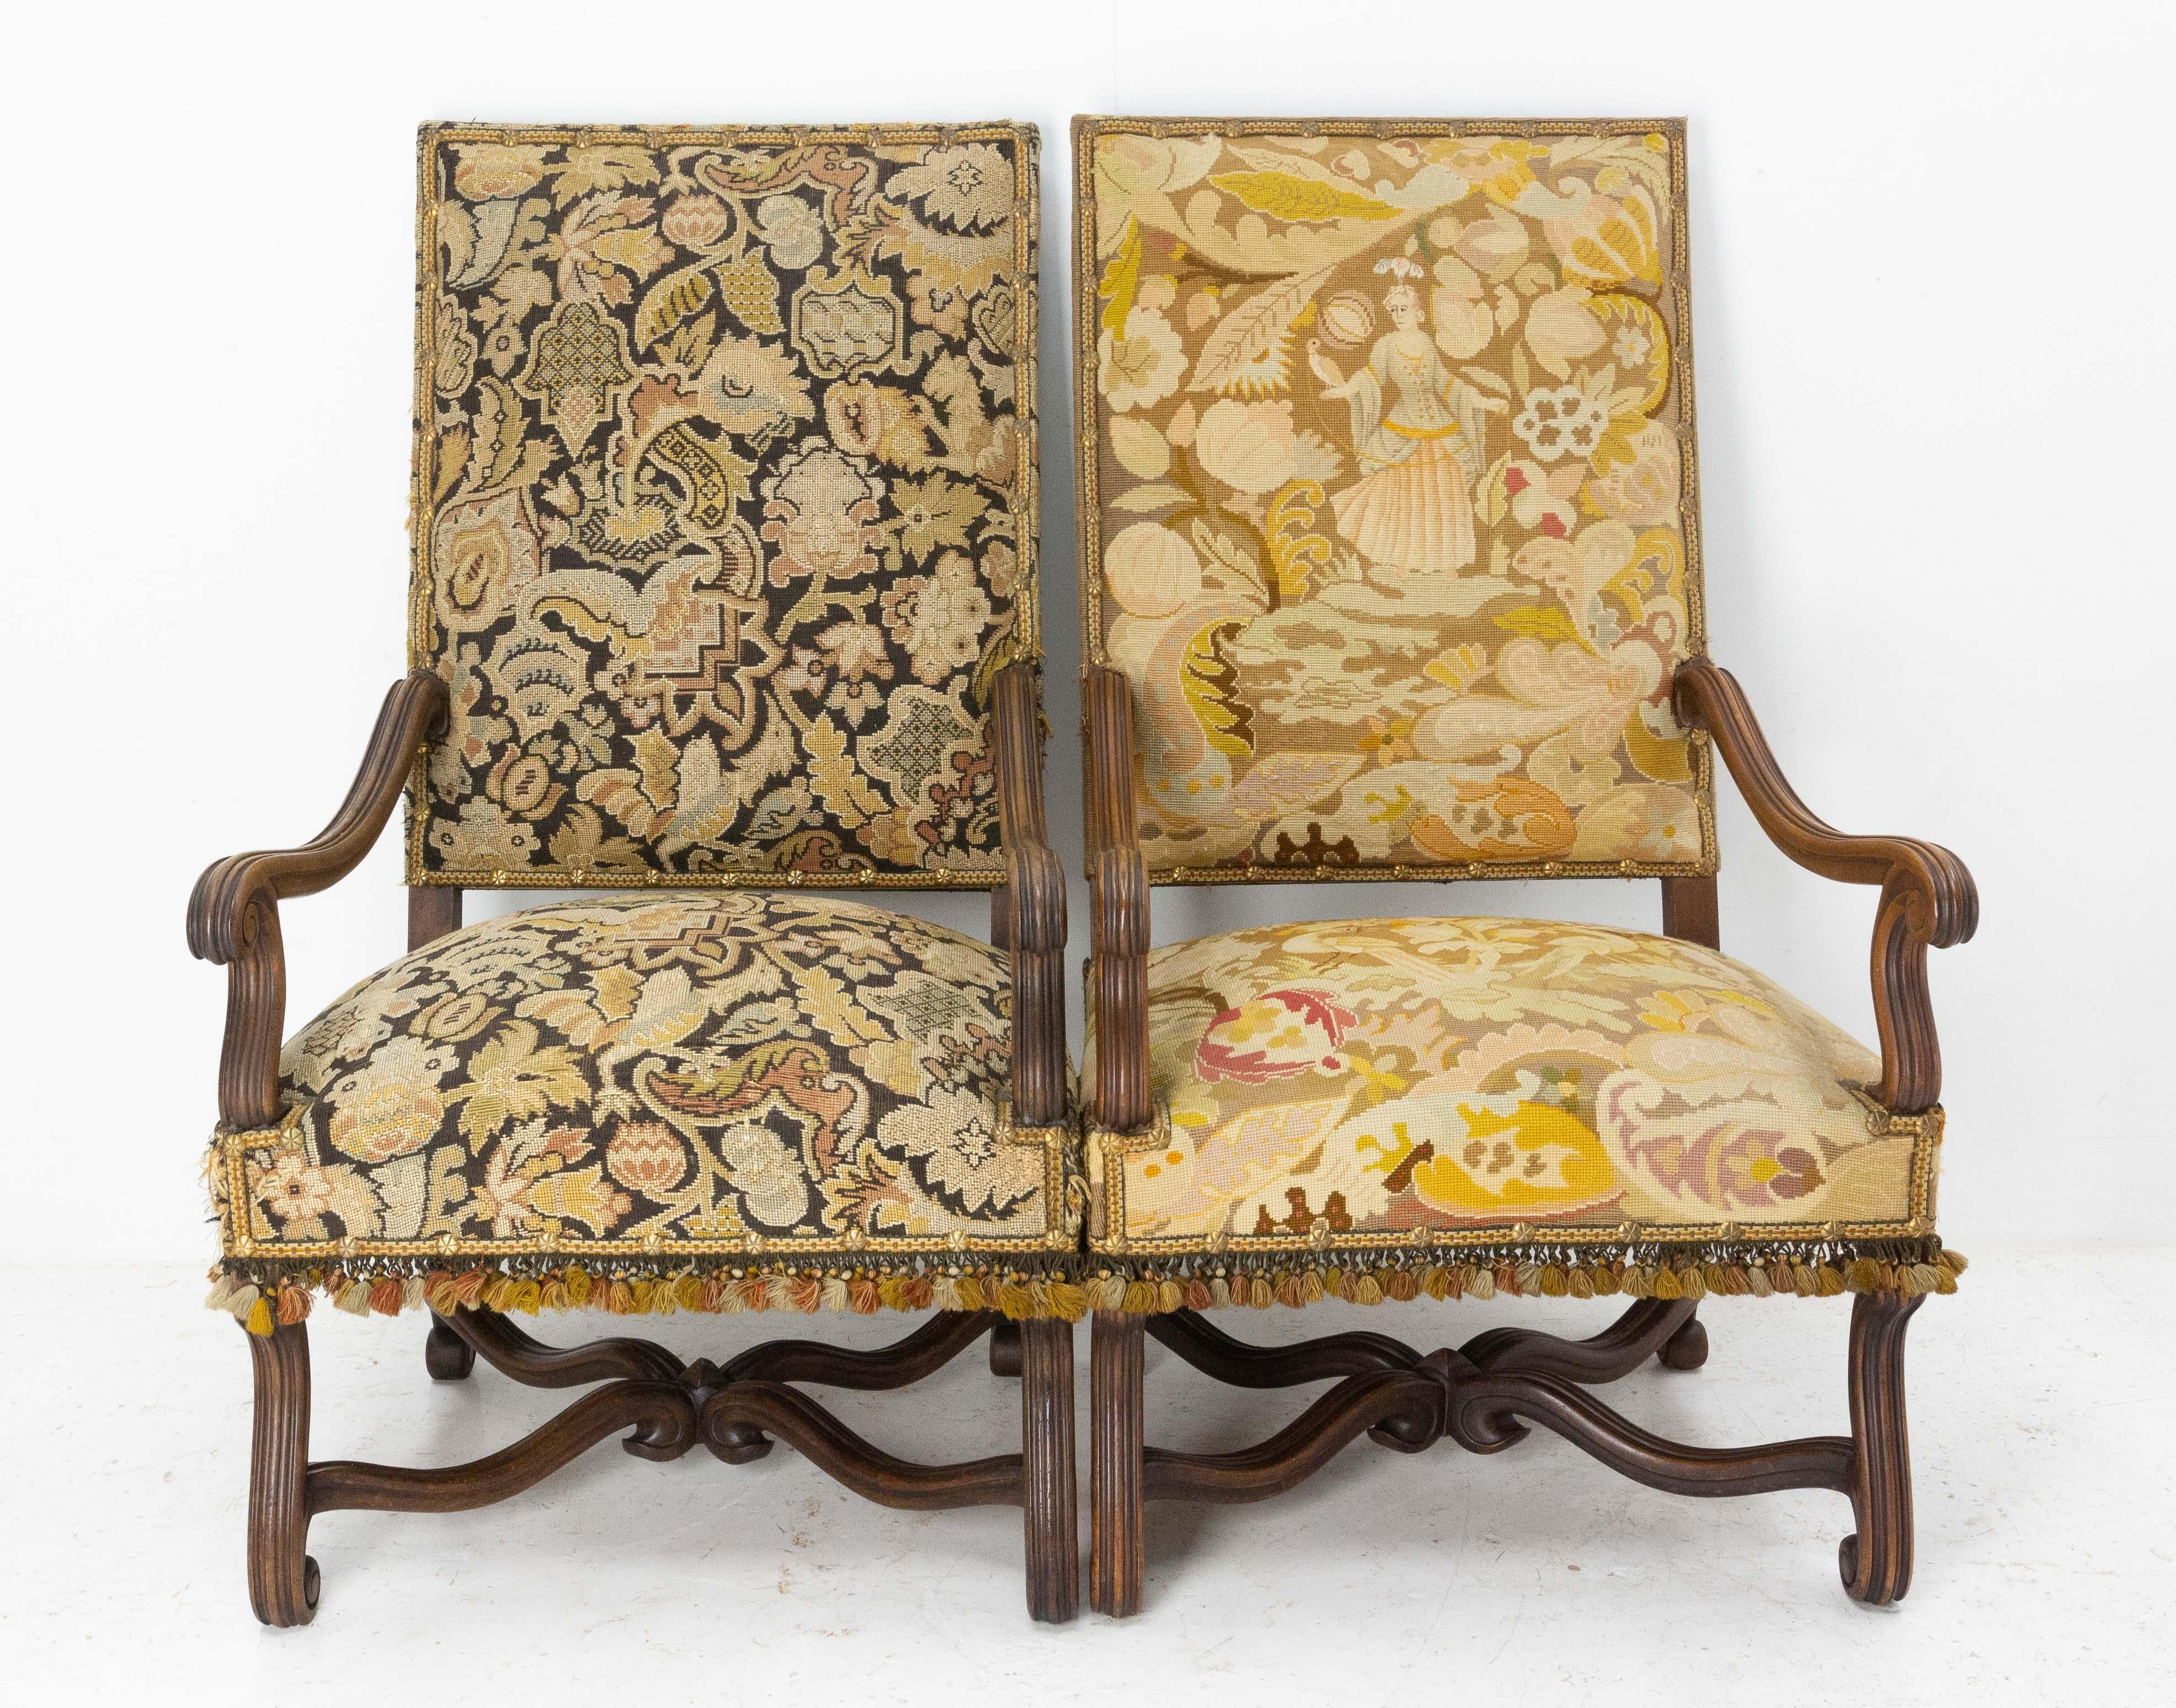 Paire de fauteuils ouverts ou chaises de bureau de style Louis XIII,
A récupérer.
vers 1880.
Bon état.
Les cadres sont sains et solides.

Expédition :
L146 P 68 H 122 38,4 Kg.